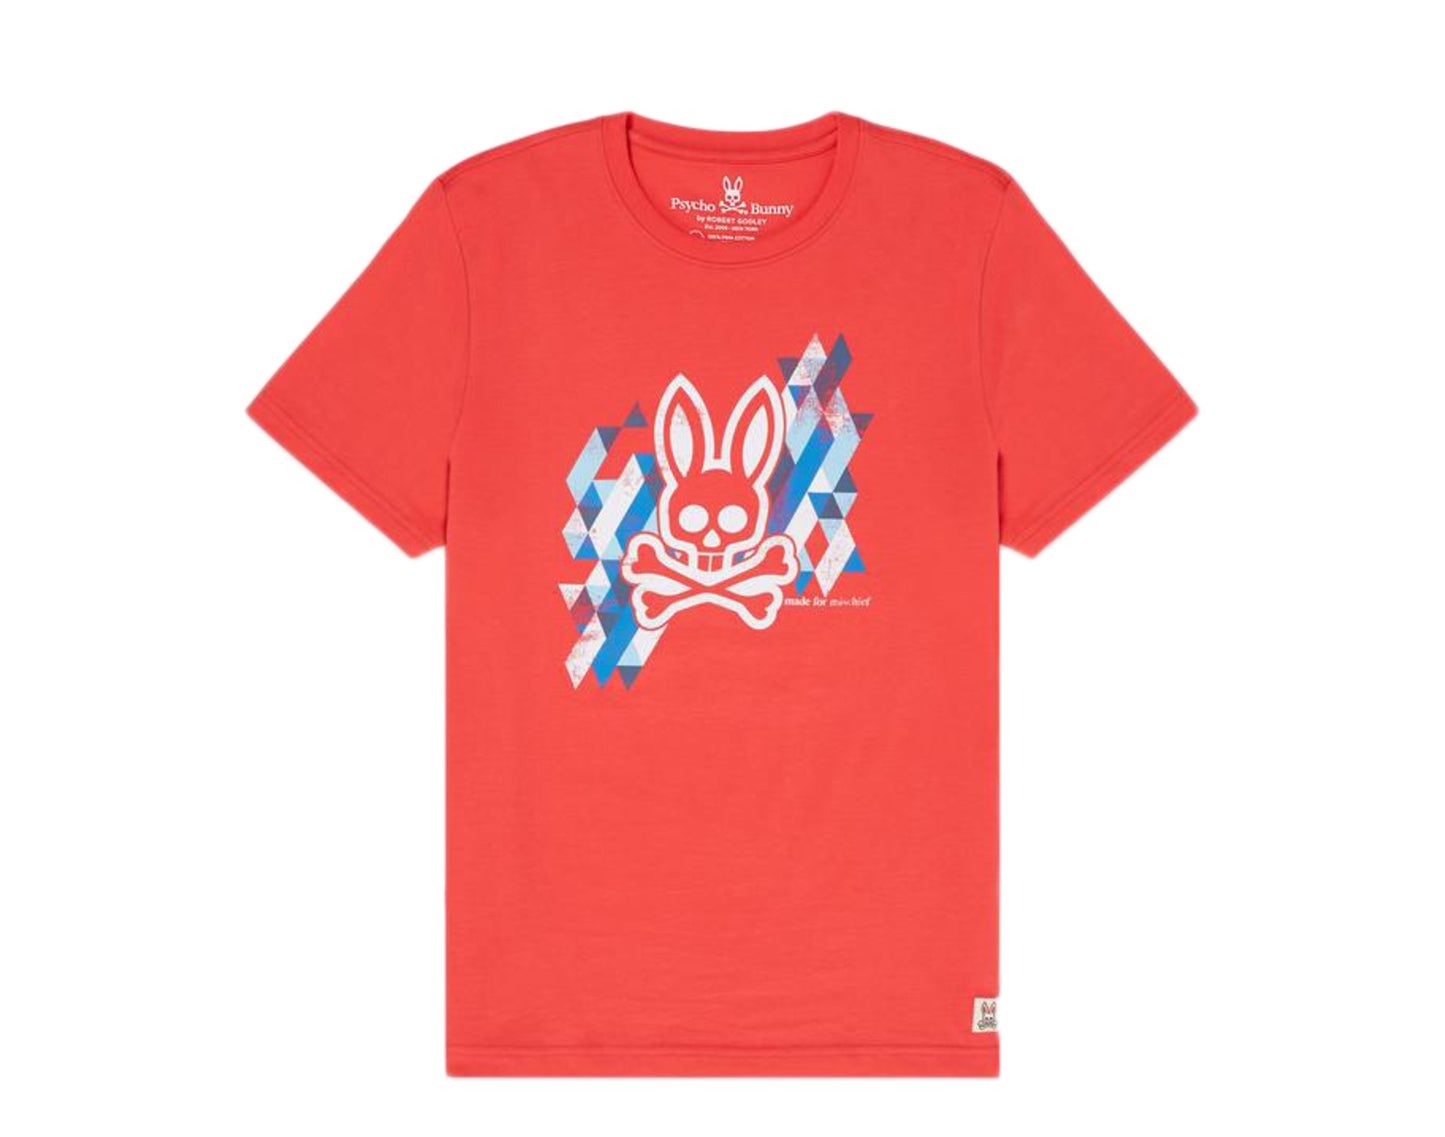 Psycho Bunny Padbury Graphic Hibiscus Pink Men's Tee Shirt B6U648H1PC-HBC